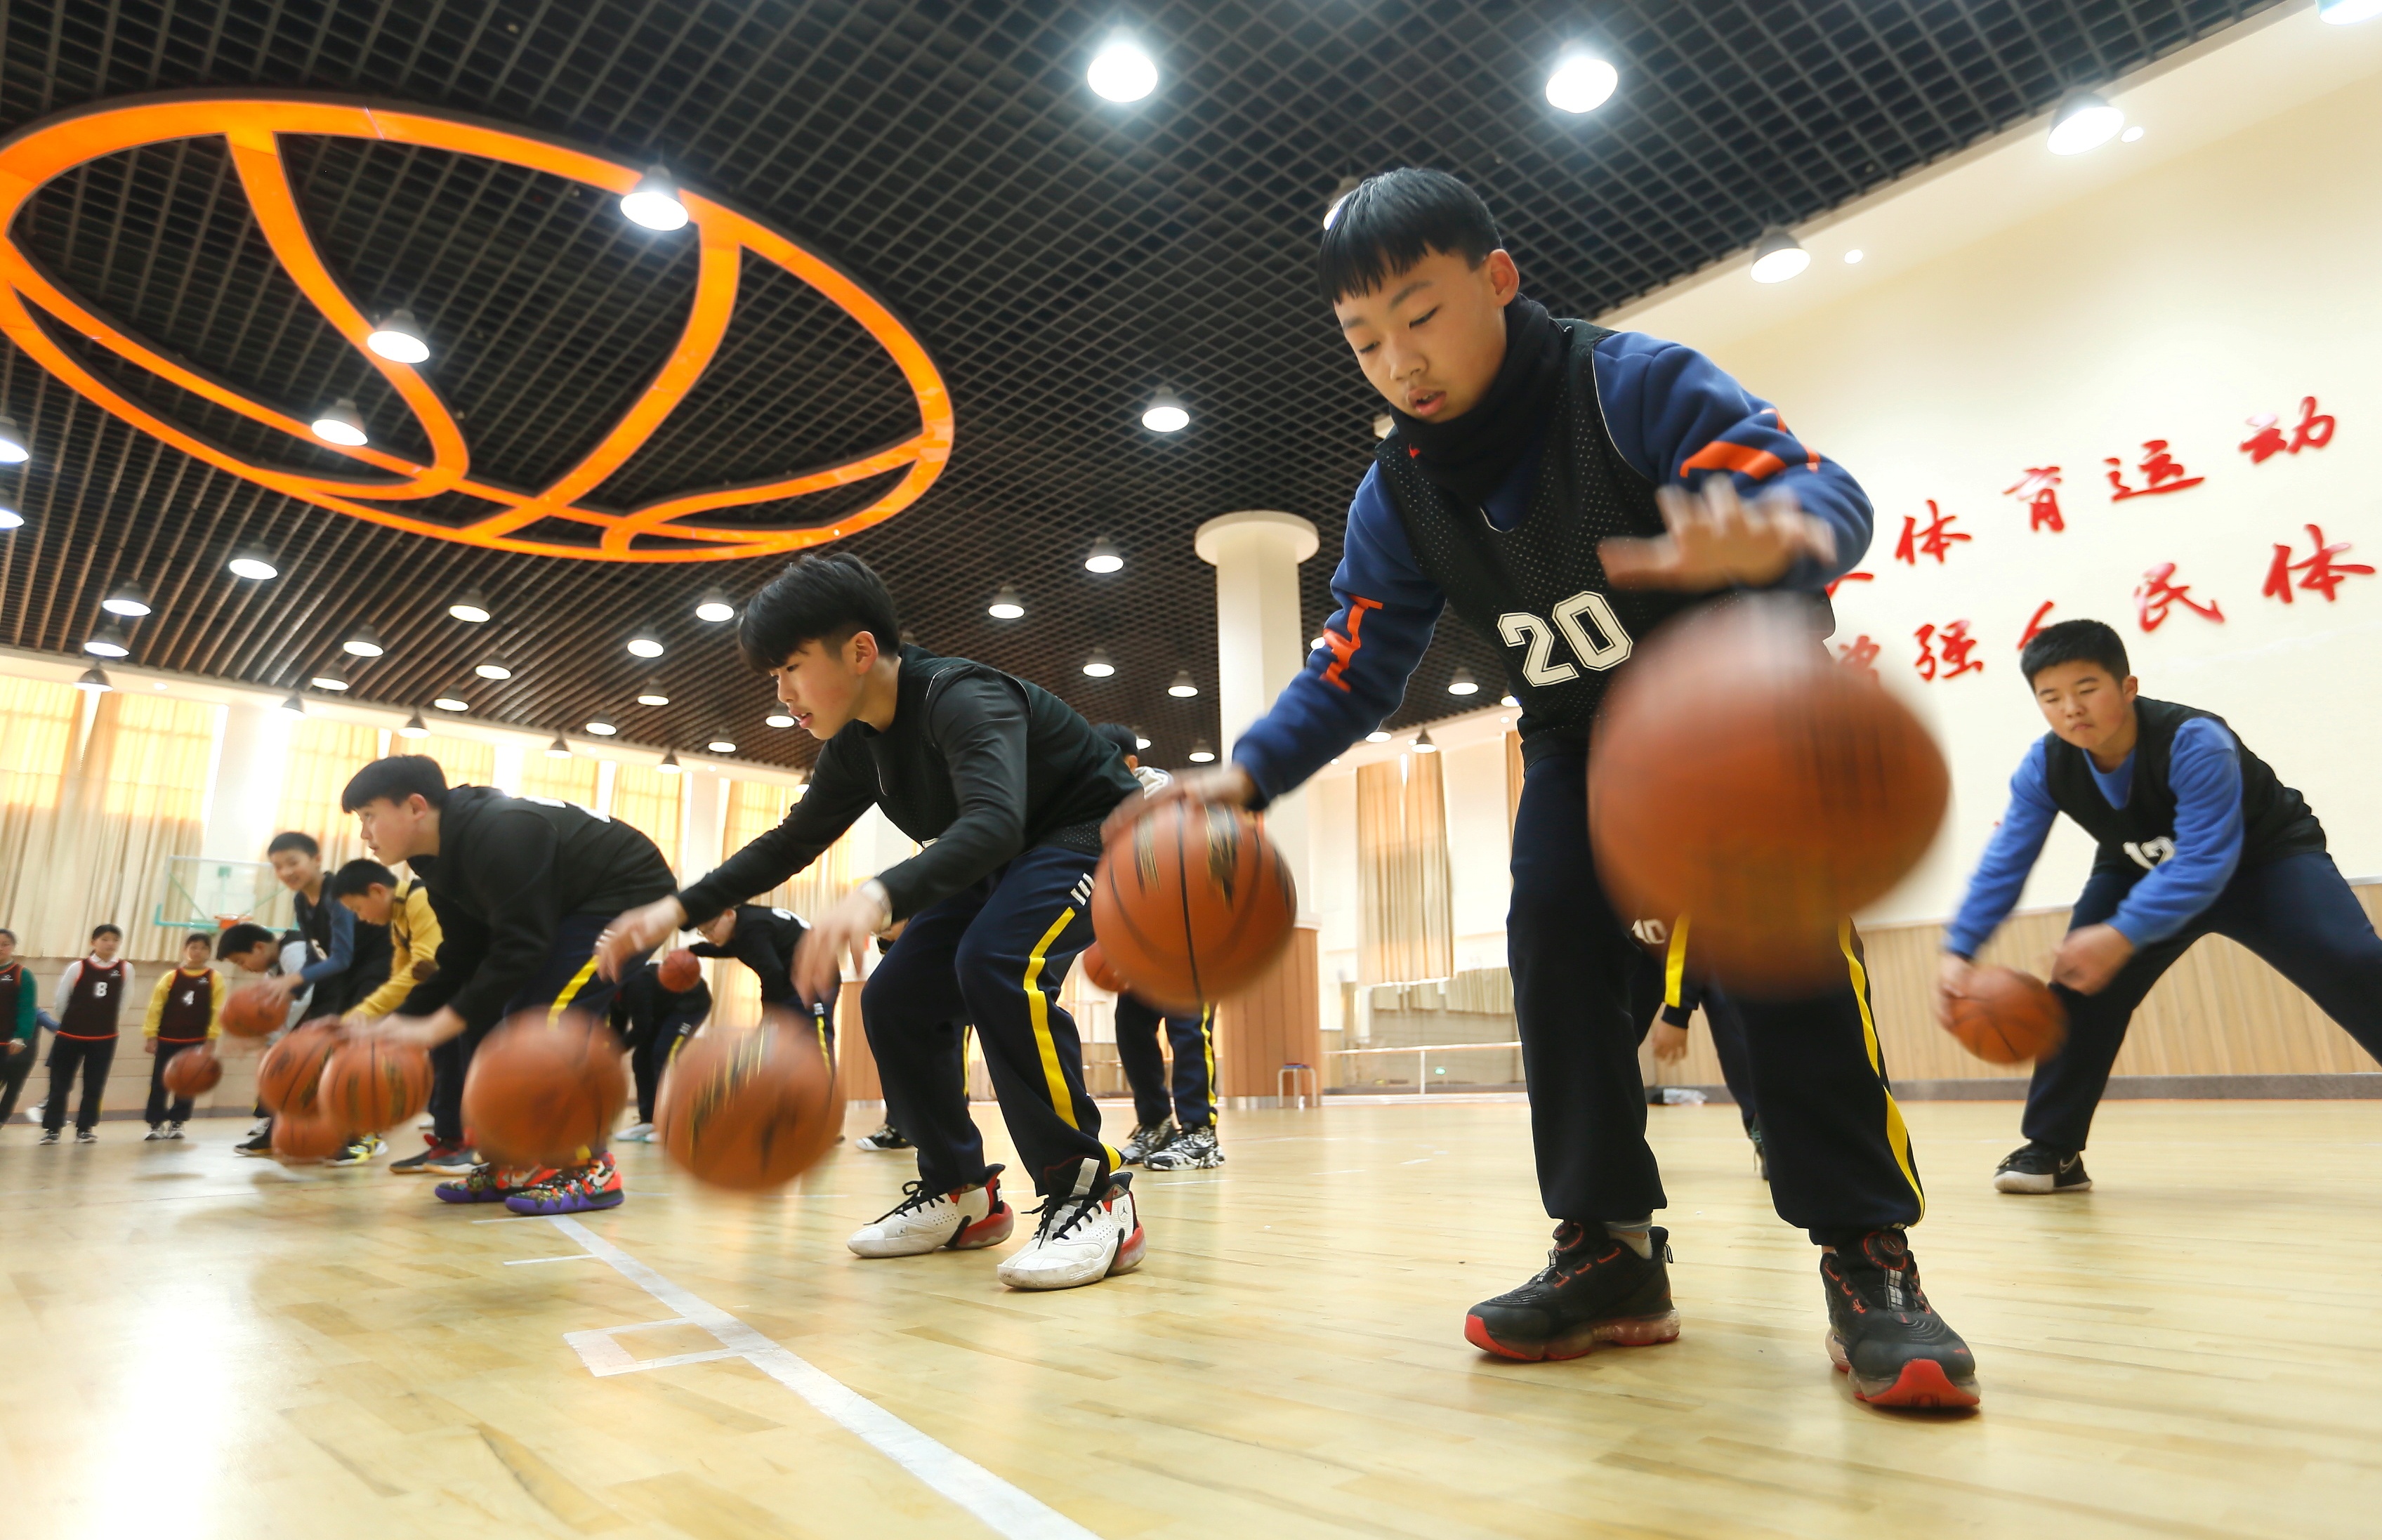 不断丰富体育课程内容,开设多个体育运动社团,鼓励学生参与篮球,足球